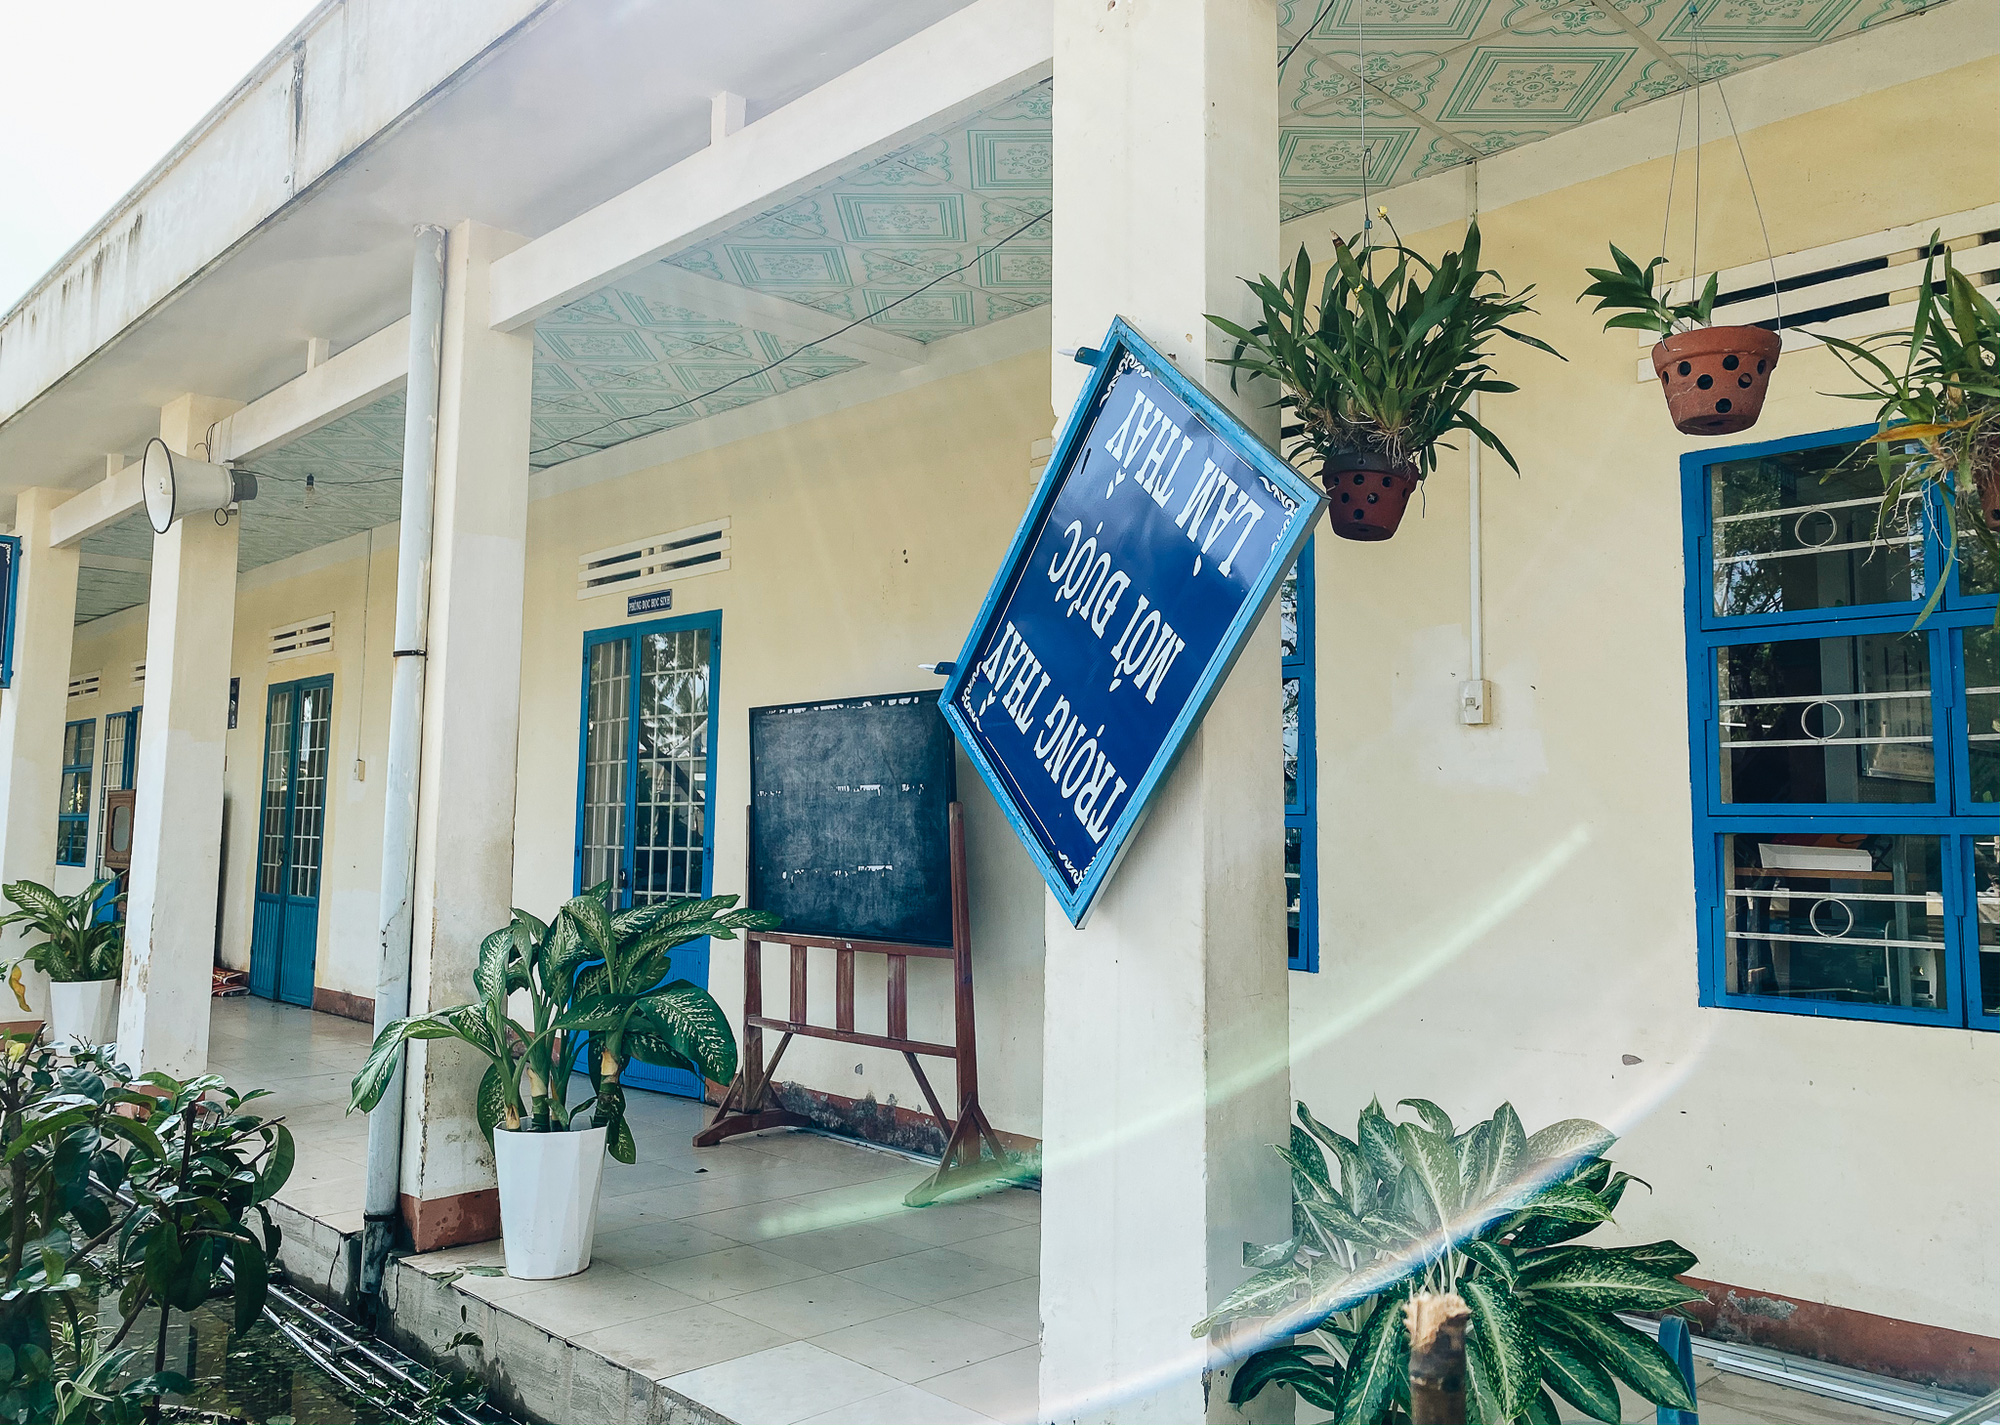 Trường học ở Bình Định tan hoang sau bão số 9, giáo viên vất vả dọn dẹp để chuẩn bị đón học sinh trở lại - Ảnh 4.